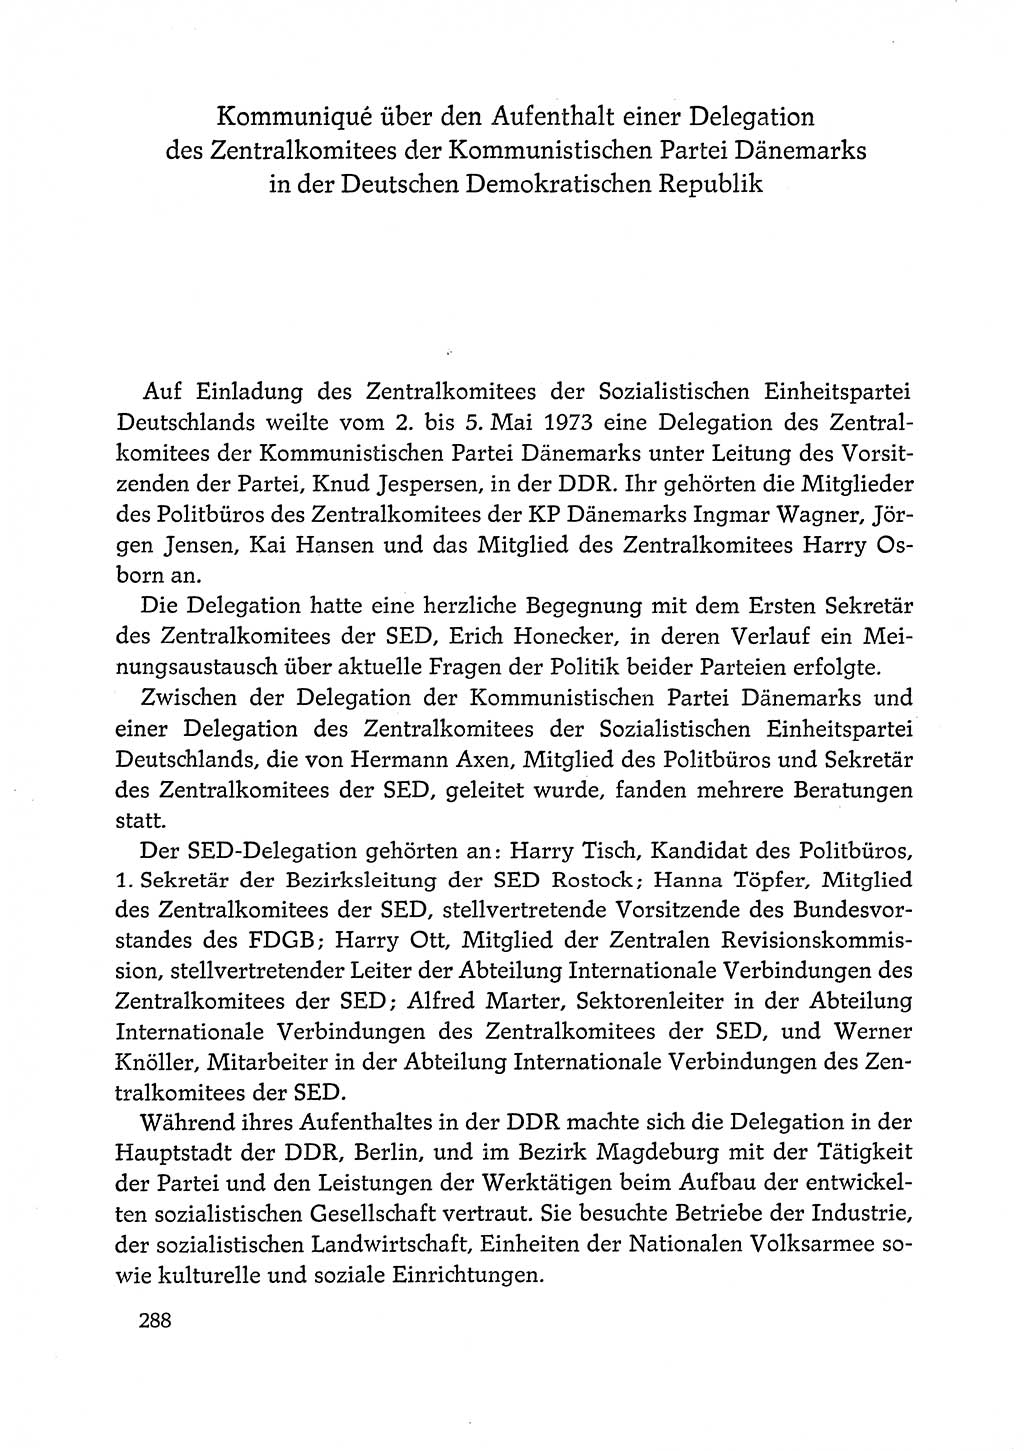 Dokumente der Sozialistischen Einheitspartei Deutschlands (SED) [Deutsche Demokratische Republik (DDR)] 1972-1973, Seite 288 (Dok. SED DDR 1972-1973, S. 288)